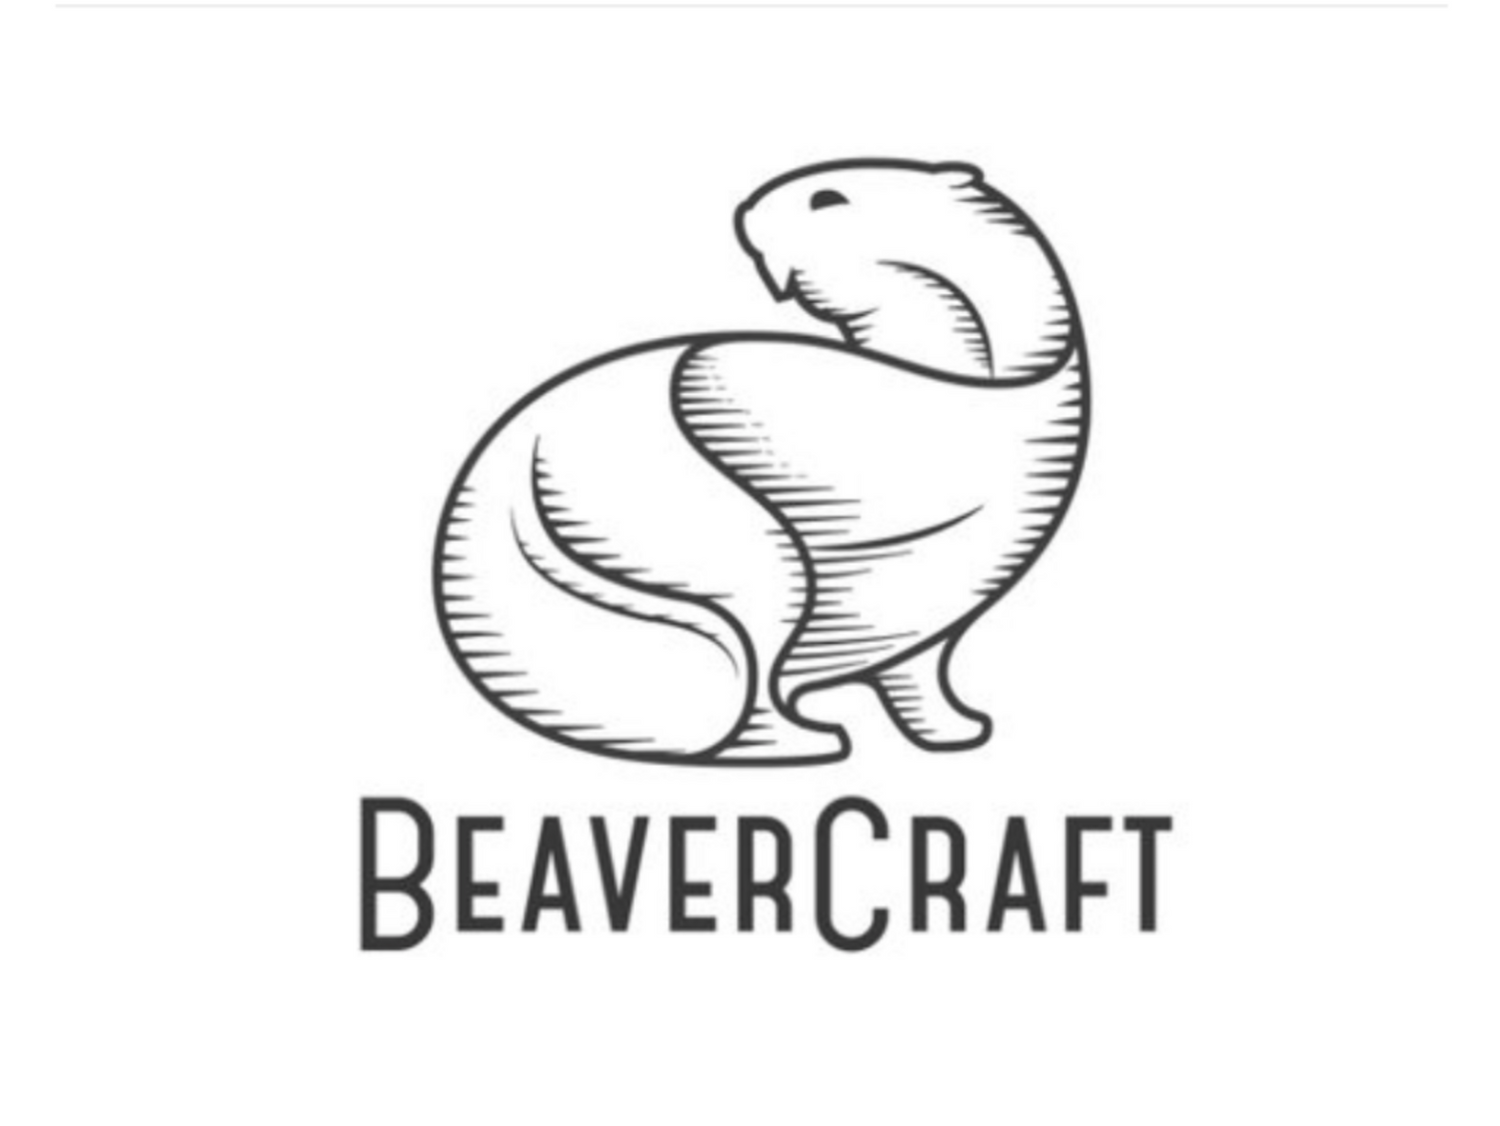 Beaver Craft Hand Craft Tools